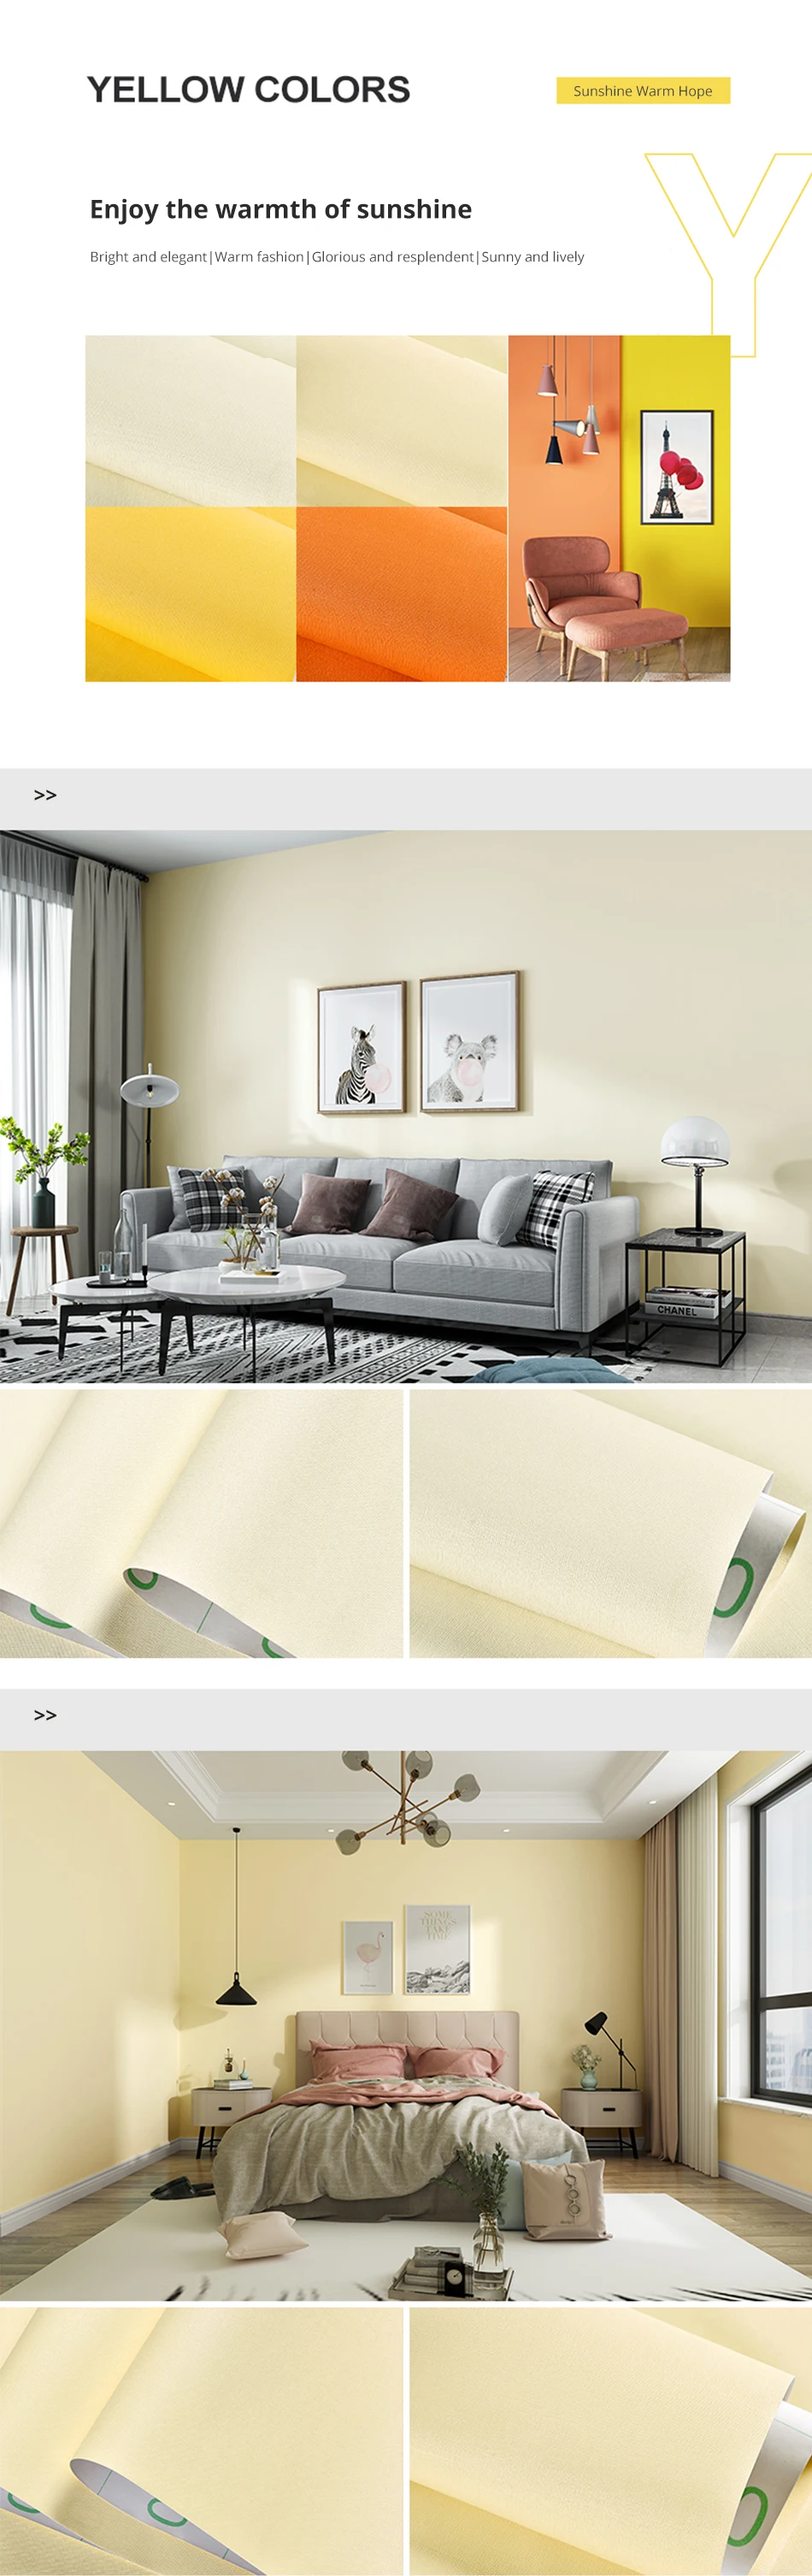 Мода Чистый цвет муар обои s для гостиной винил водонепроницаемый контакт бумага самоклеющиеся настенные наклейки для украшения комнаты